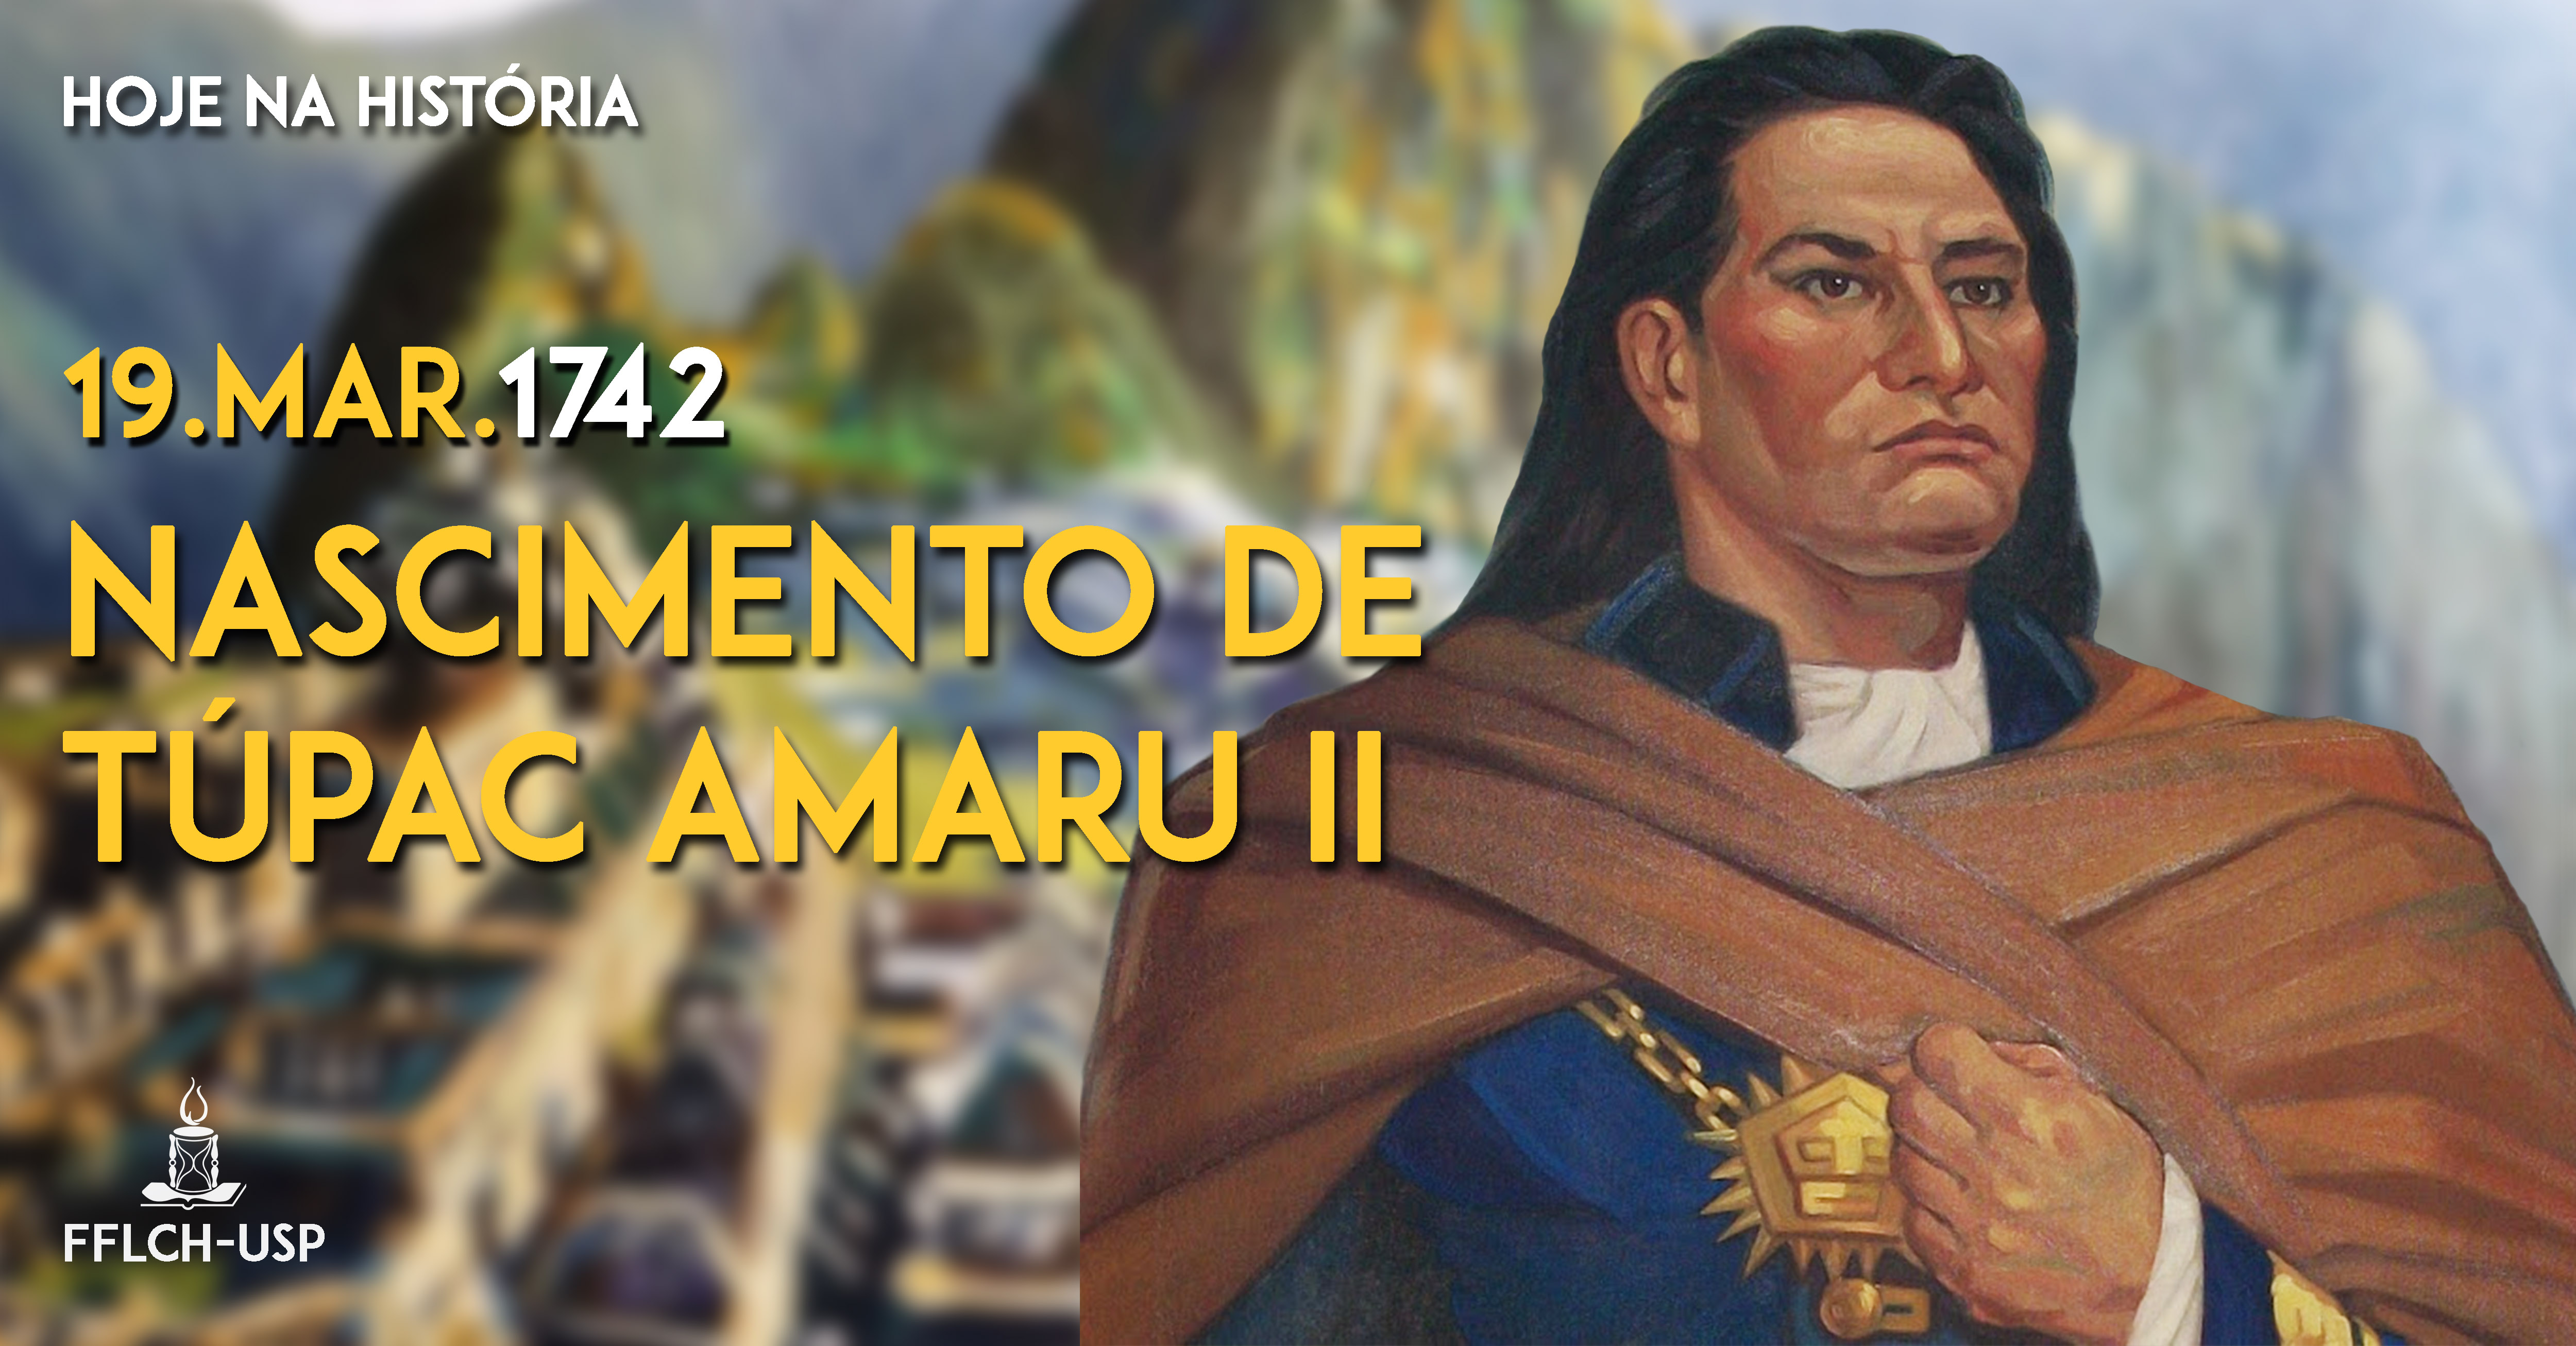 Tupac Amaru II foi assassinado pelas autoridades metropolitanas, mas deixou seu legado para posteriores revoltas latino-americanas. (Arte: Renan Braz) 